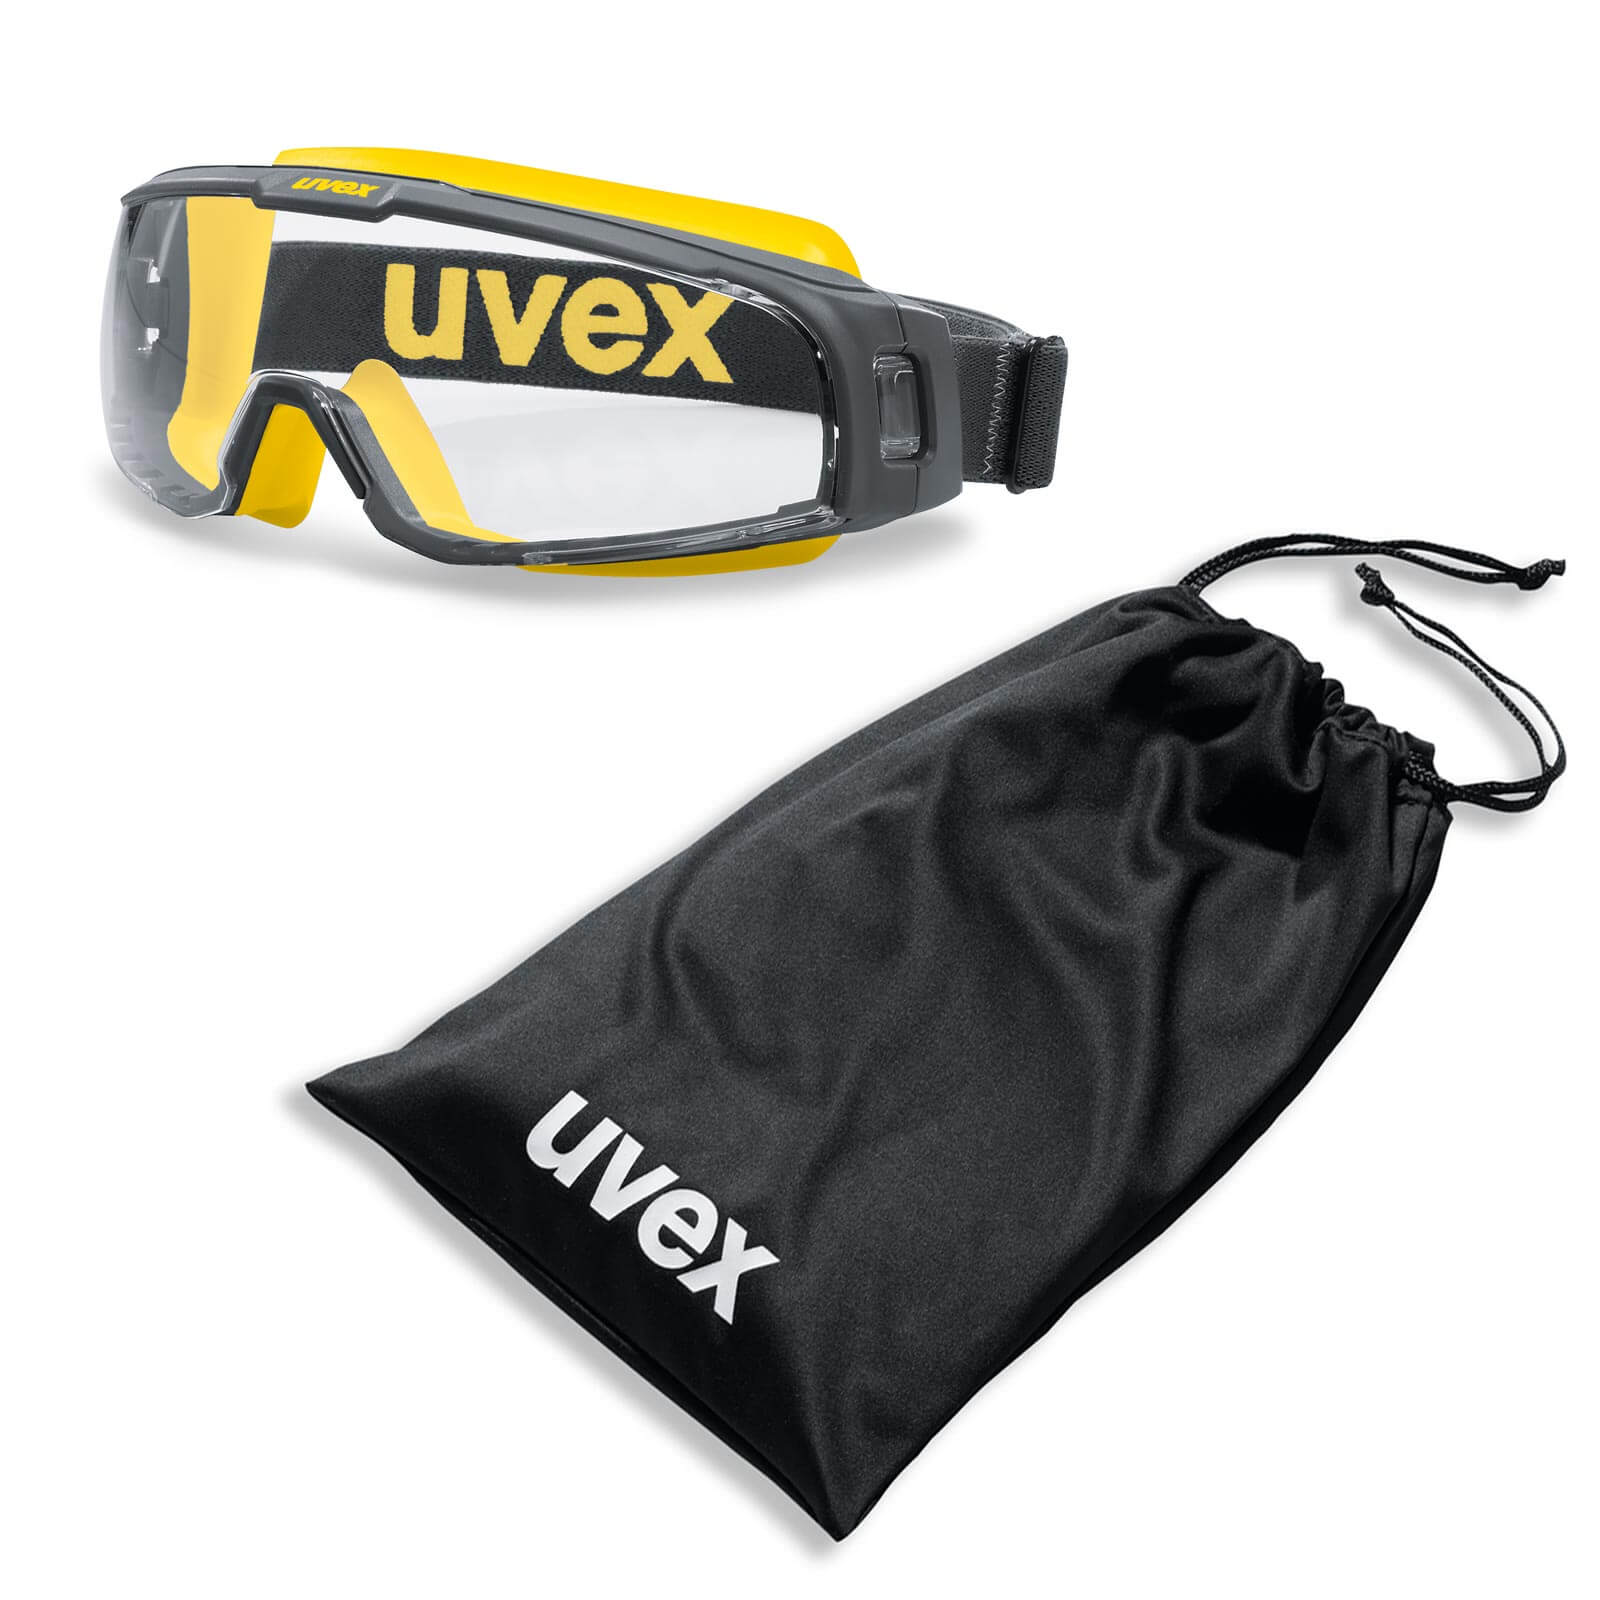 UVEX Vollsichtbrille, Vollsicht-Schutzbrille u-sonic 9308 - im Set mit Beutel Farbe:grau-gelb / klar von Uvex